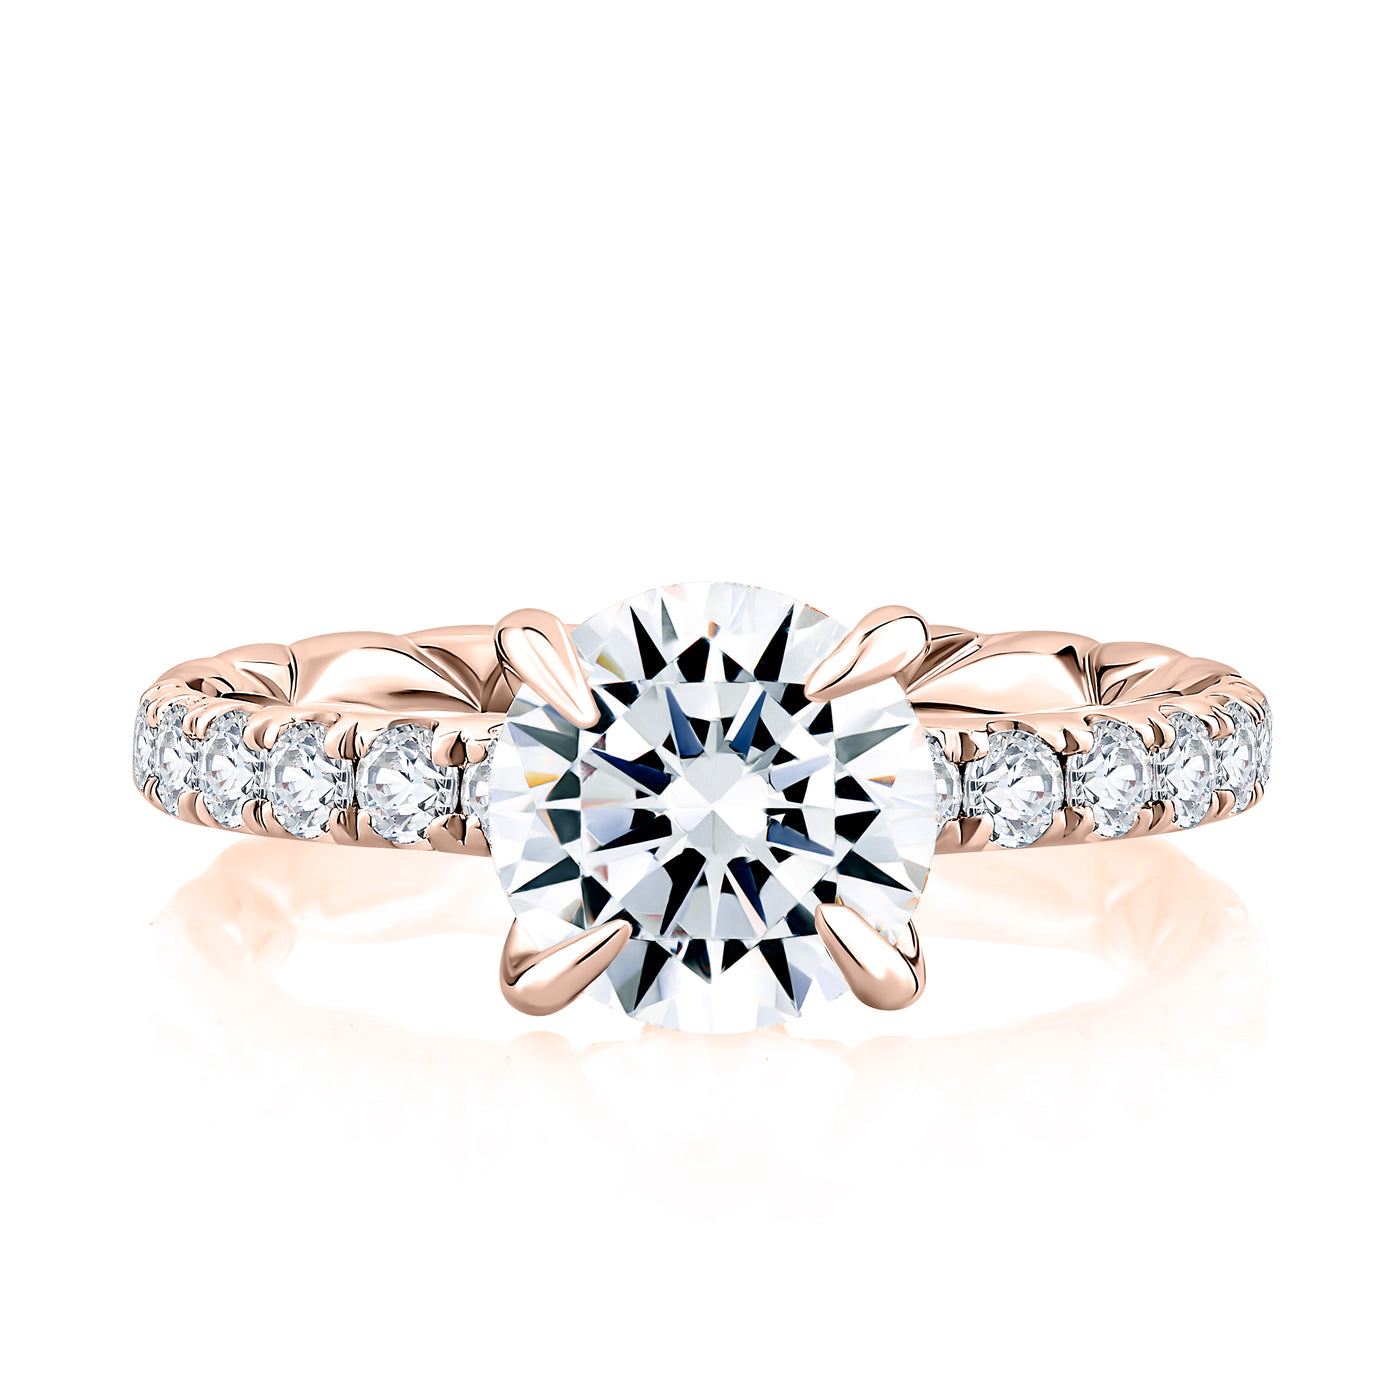 Duchess Round Diamond Engagement Ring